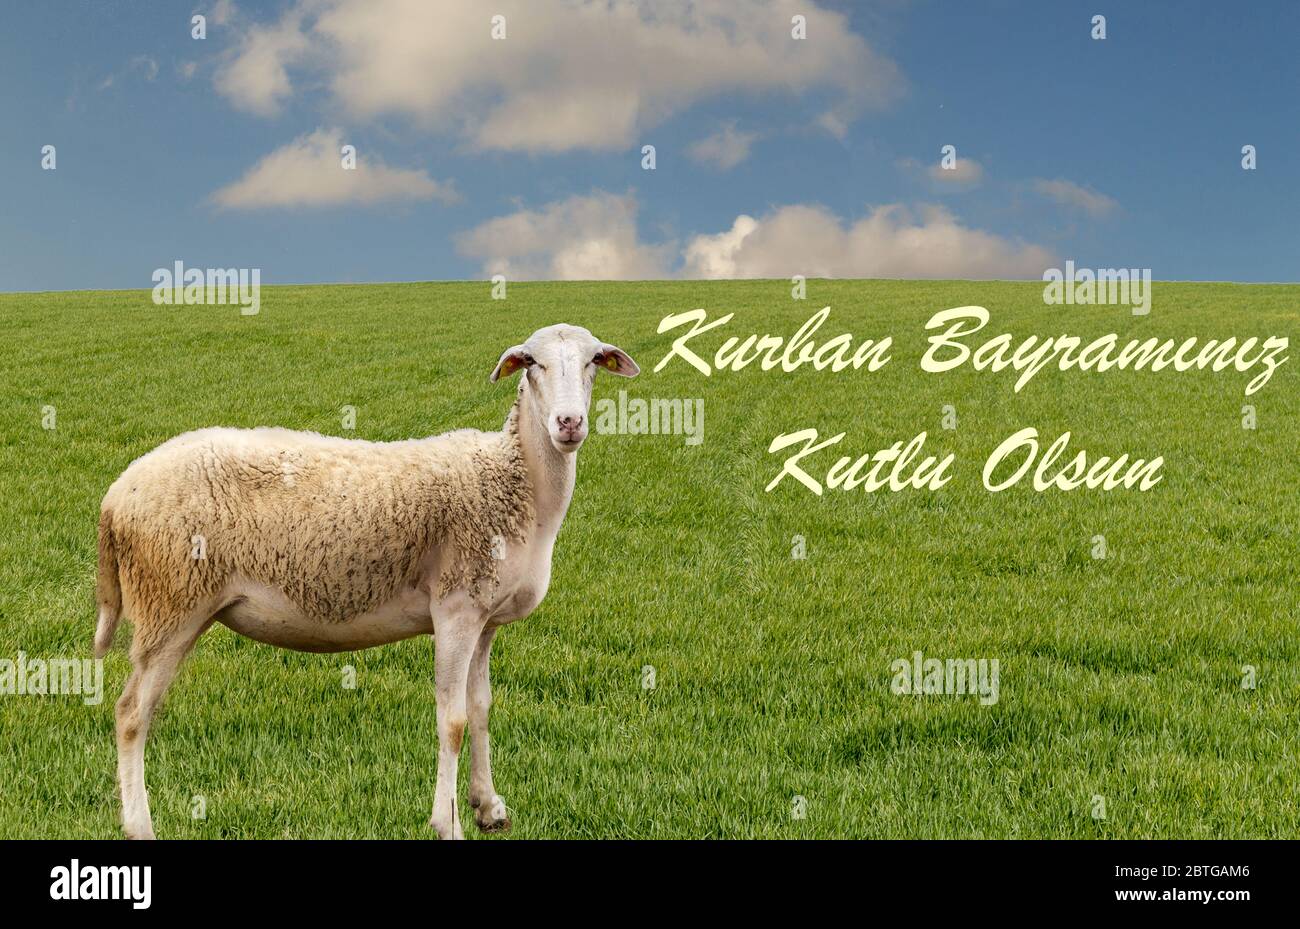 Muslimische Opfer Fest Feier und Gruß. ( Türkisch: Kurban Bayraminiz Kutlu Olsun ) Schafe auf dem grünen Gras schaut auf die Kamera Stockfoto